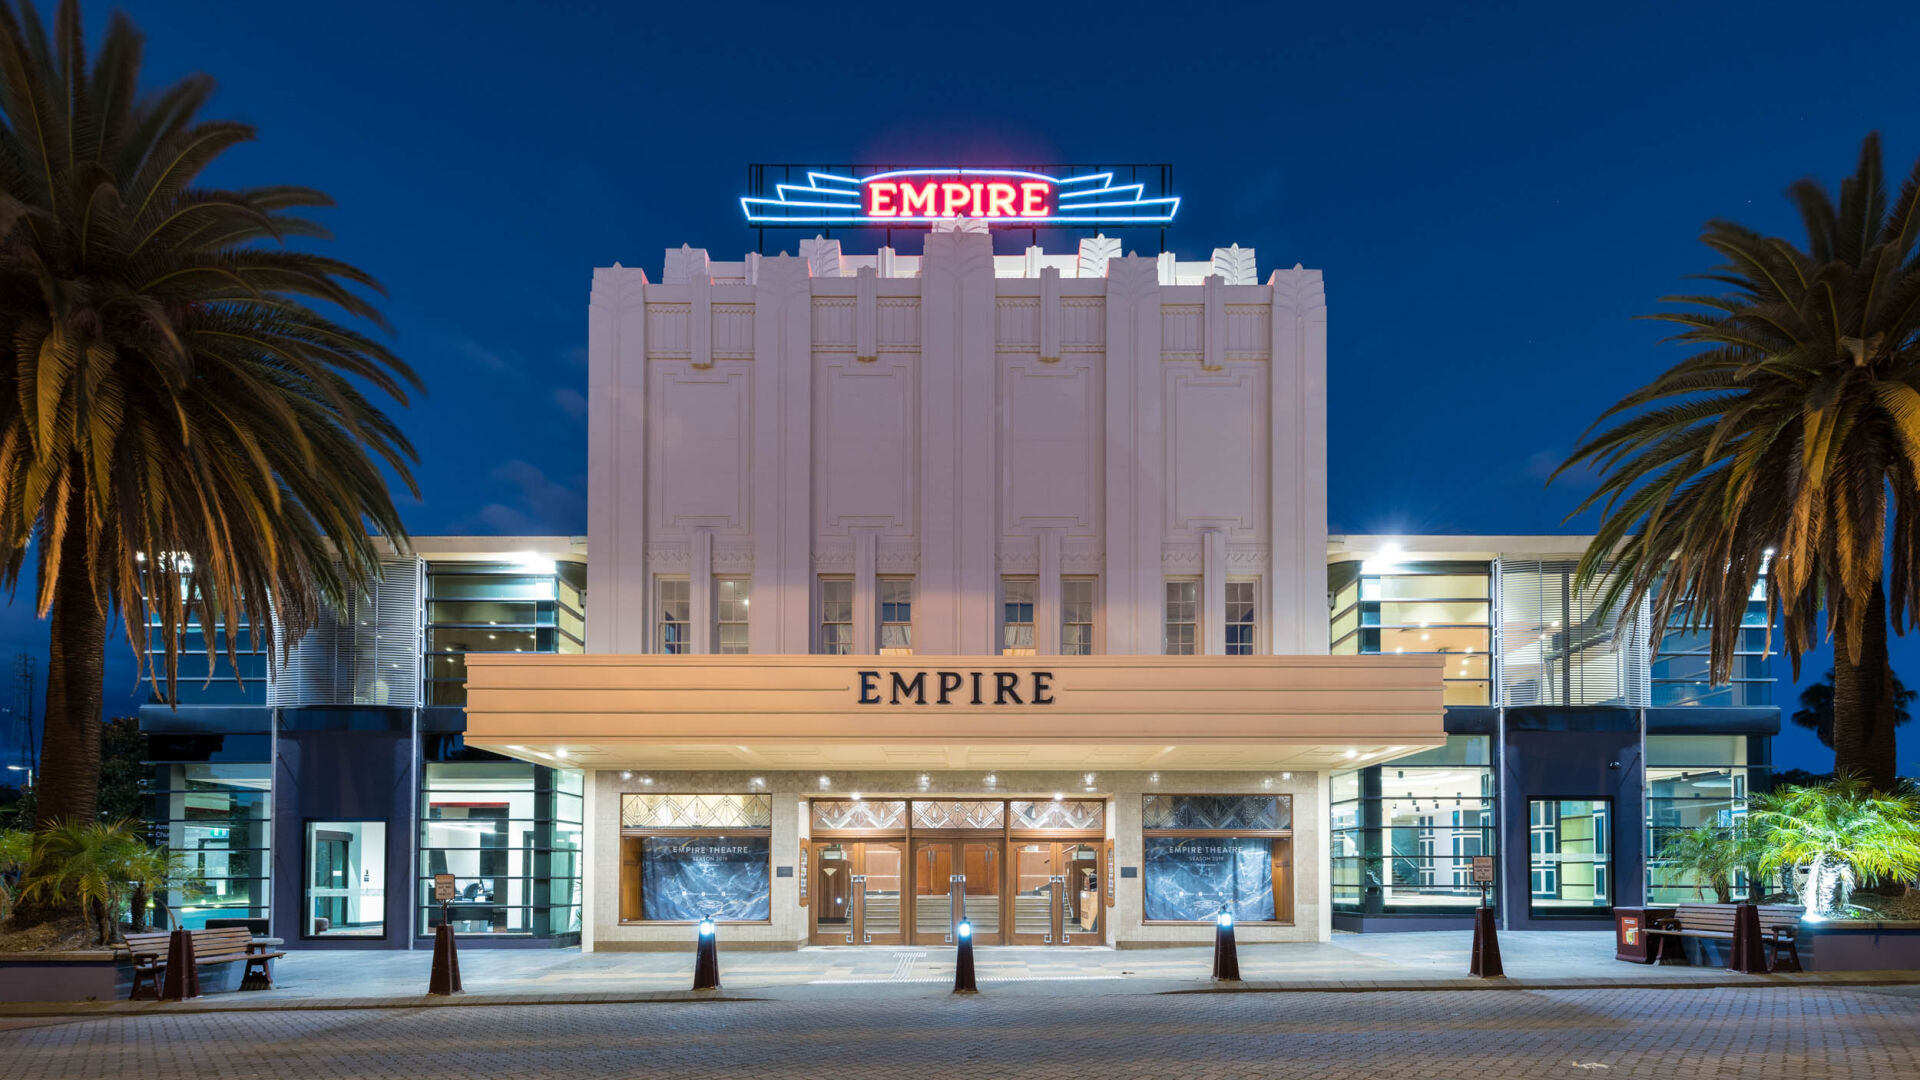 Empire Theatre